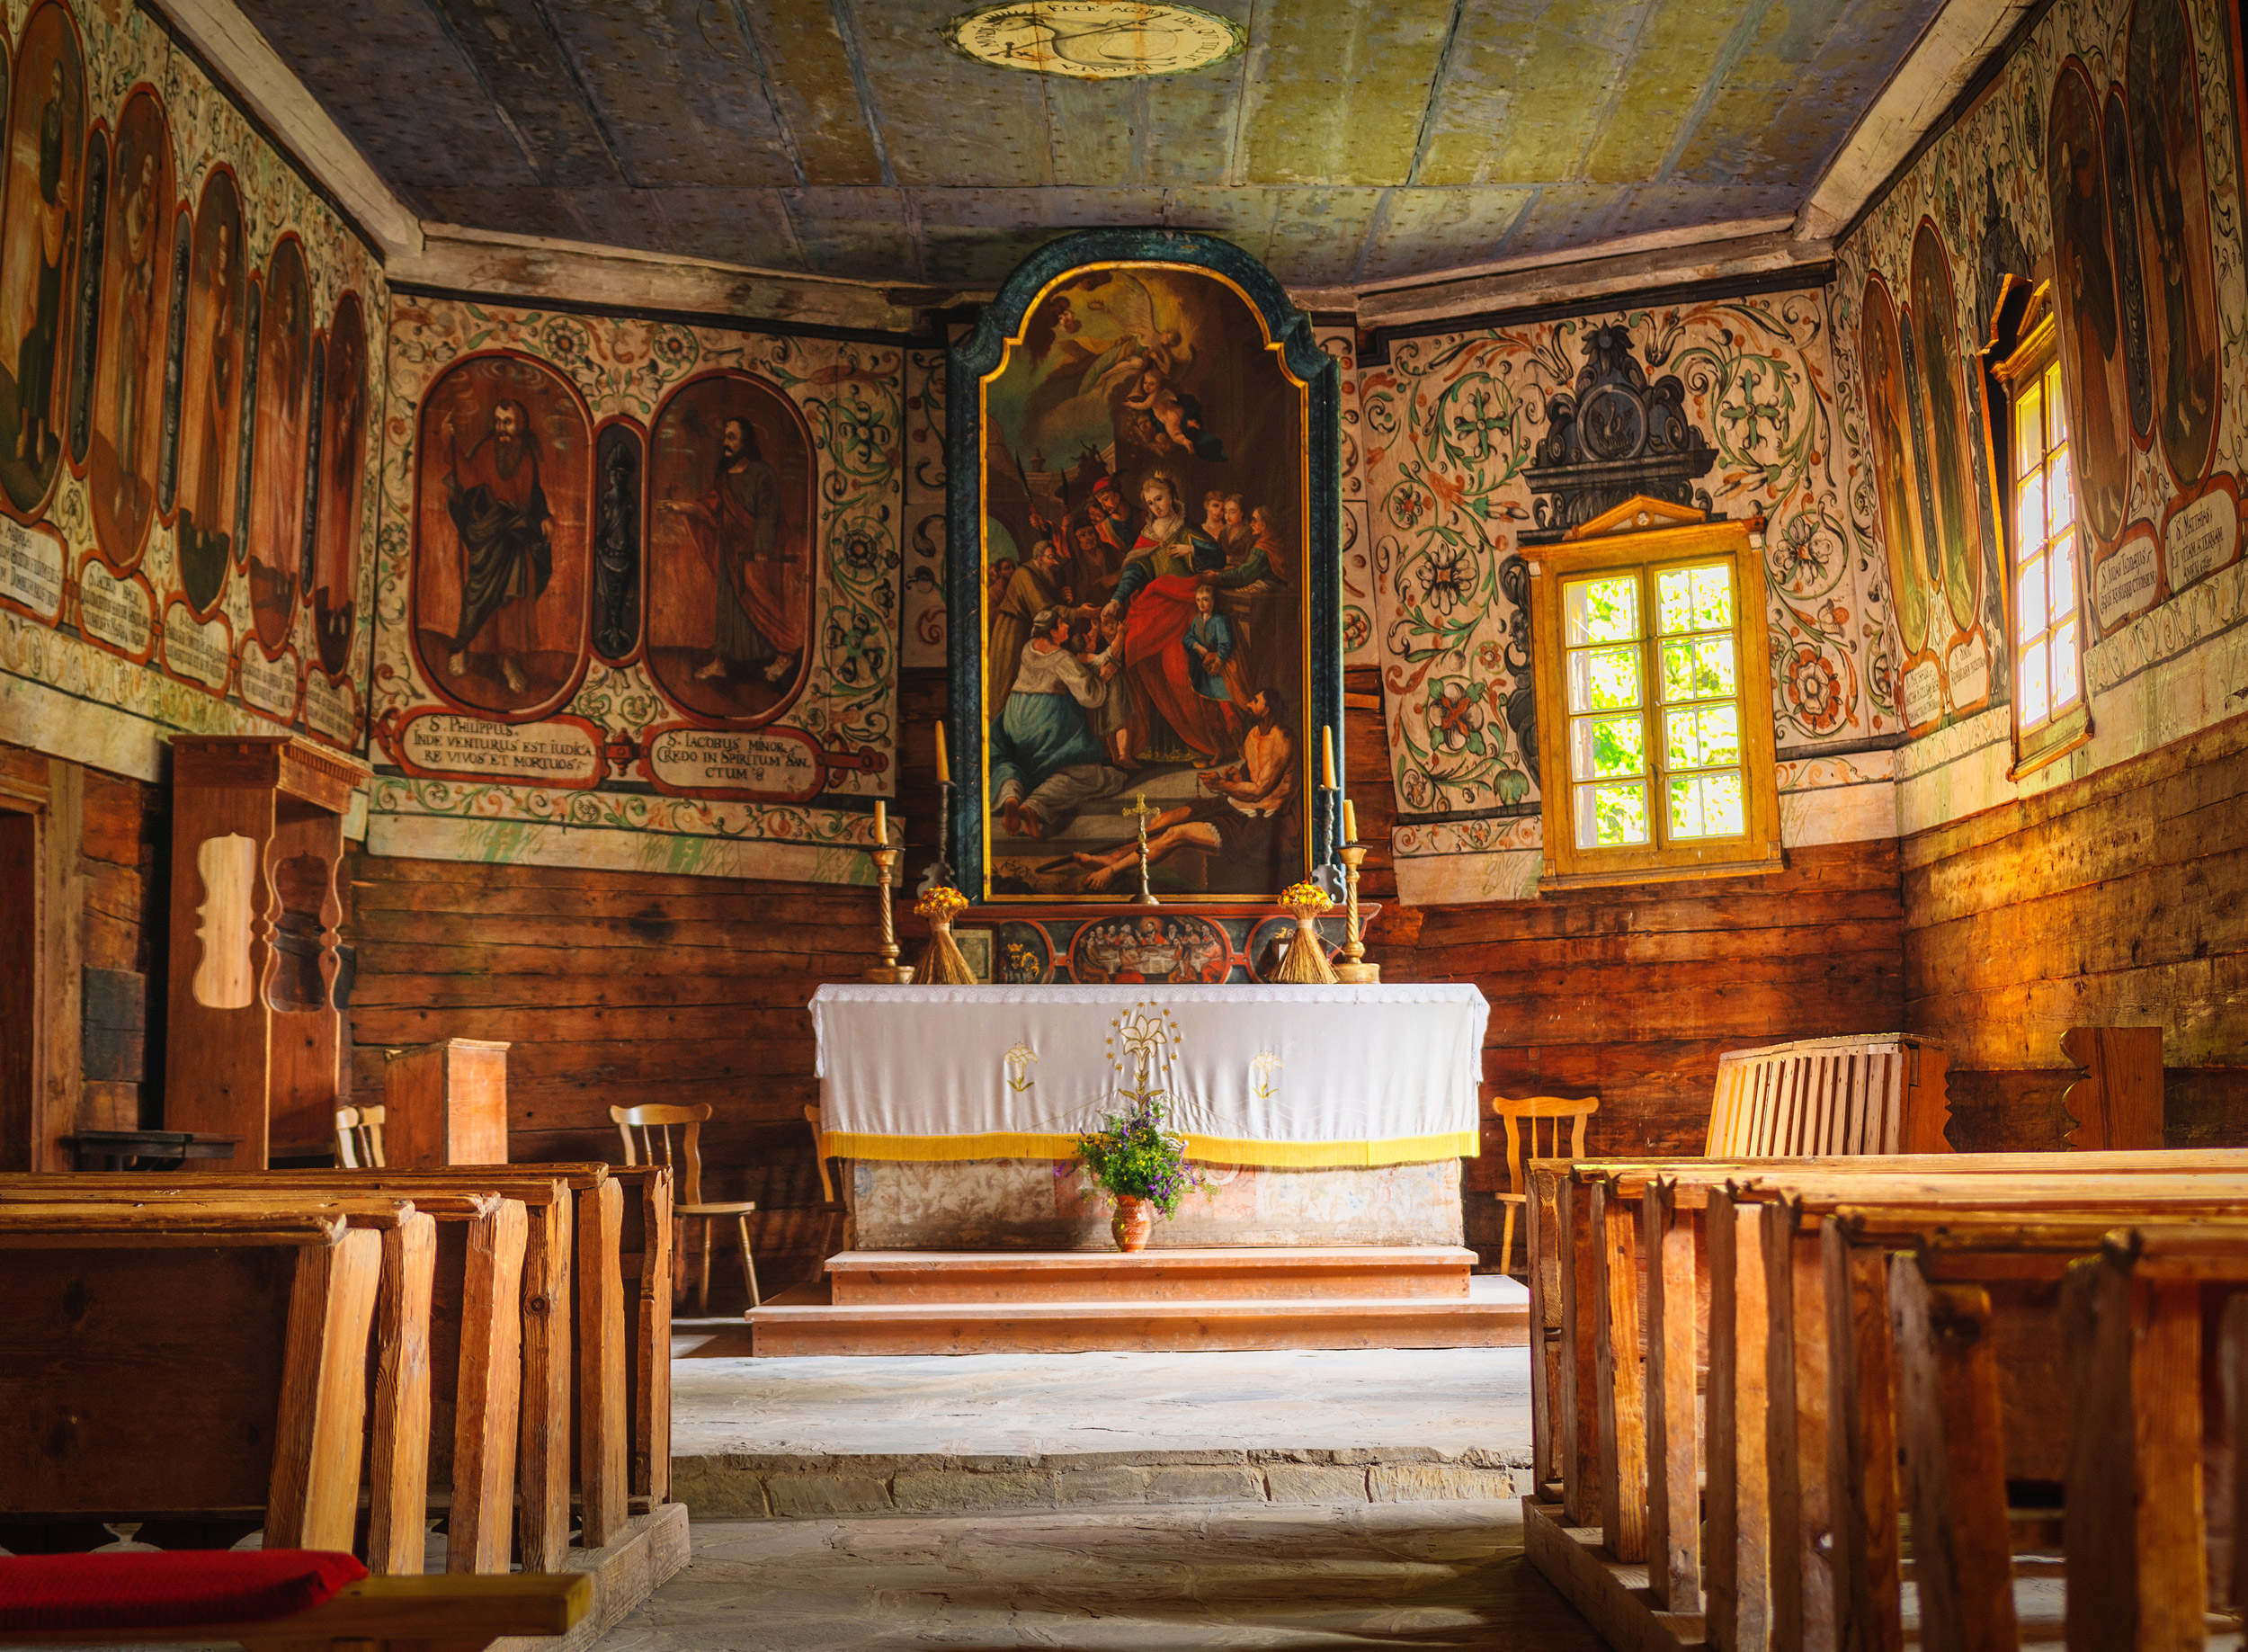 Church interior of old Slovak Village – Zuberec is a village in